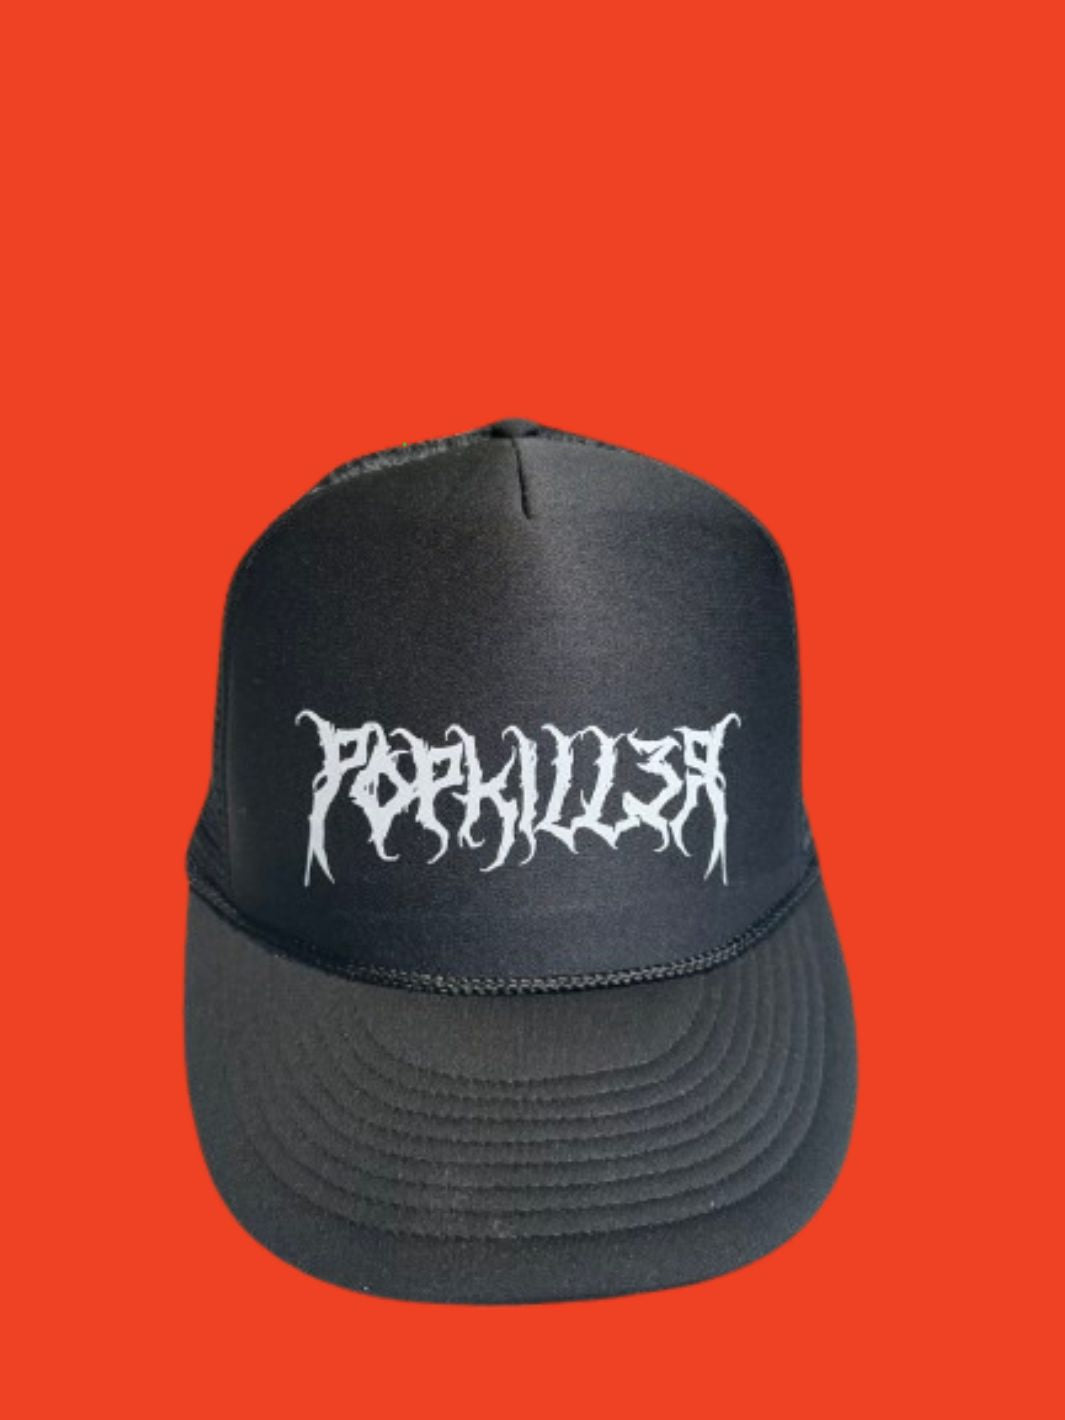 Popkiller Death Metal Mesh Hat